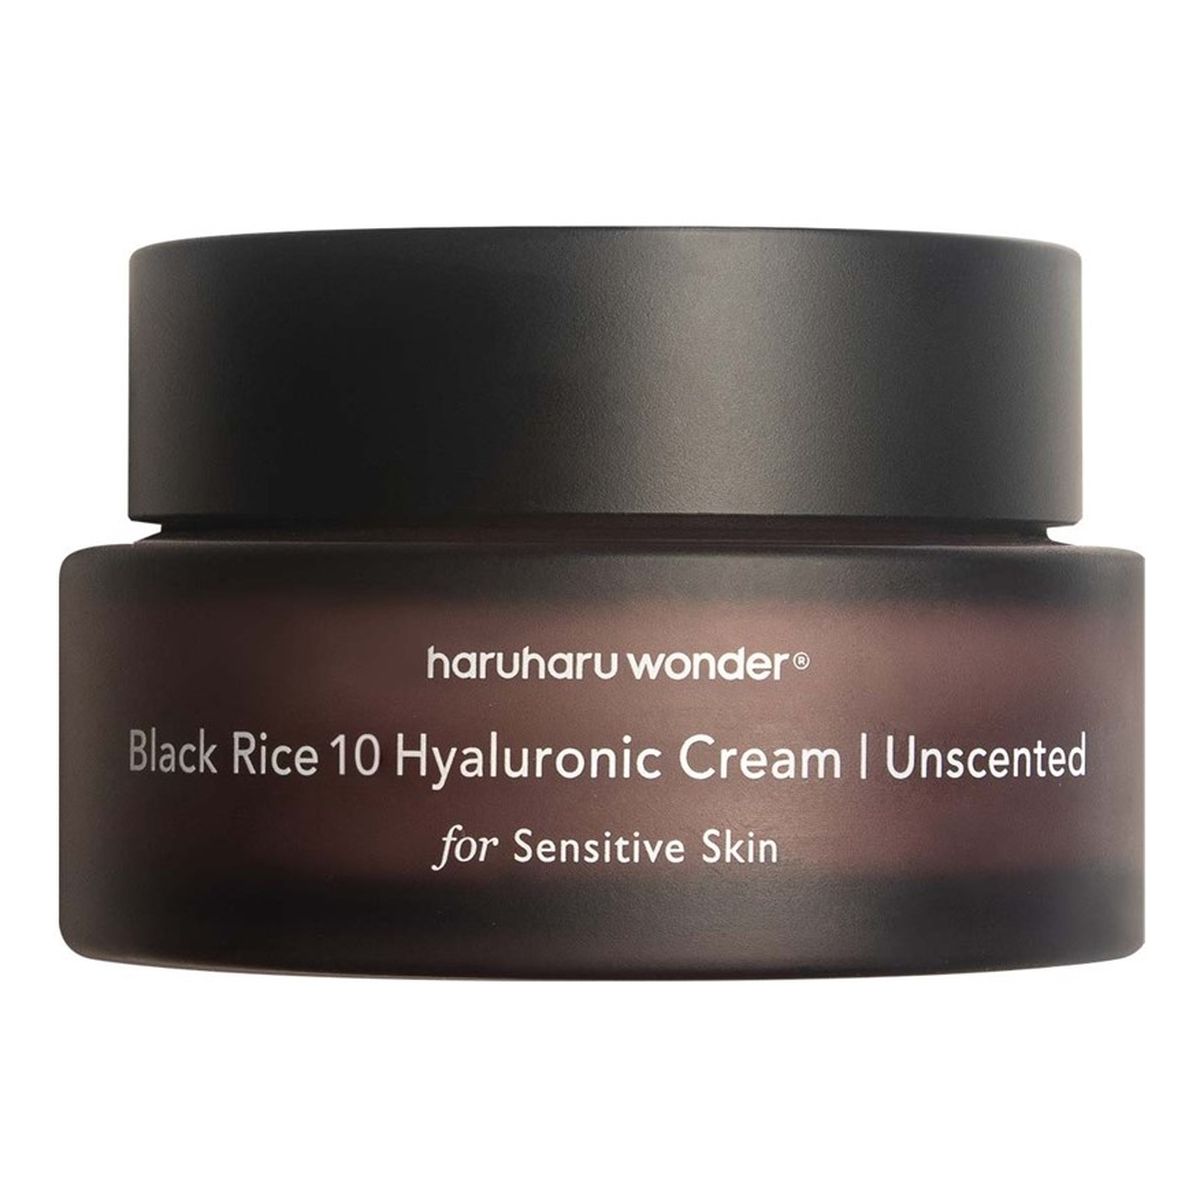 Haru Haru Wonder Black Rice 10 Hyaluronic Cream nawilżający Krem do twarzy 50ml